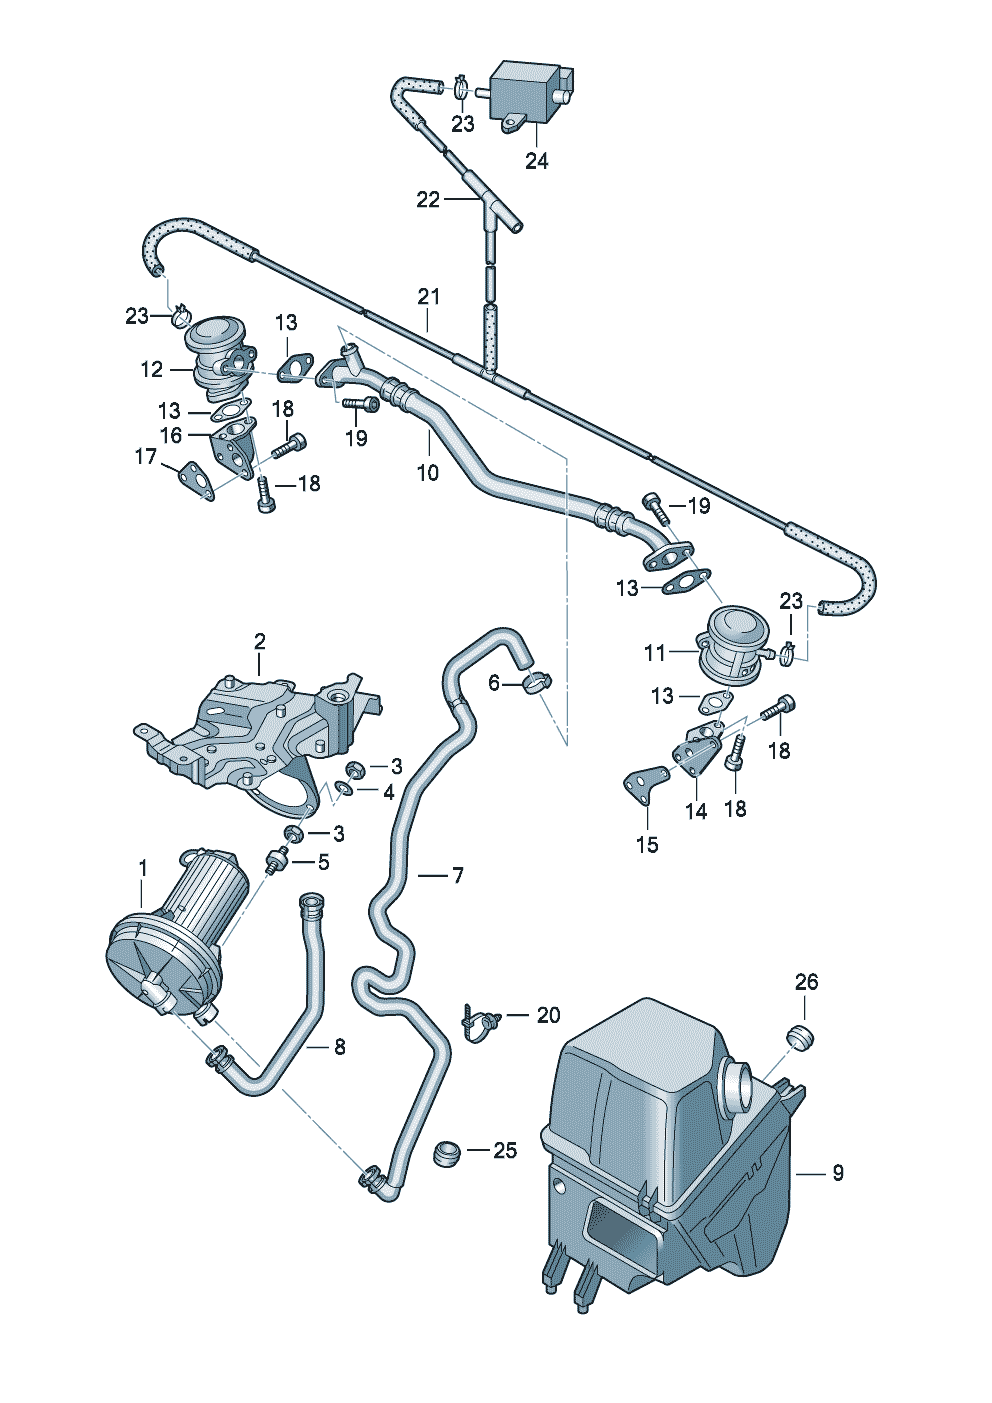 Secondary air pumpkombi valve 3.7/4.2ltr. - Audi A8 - a8